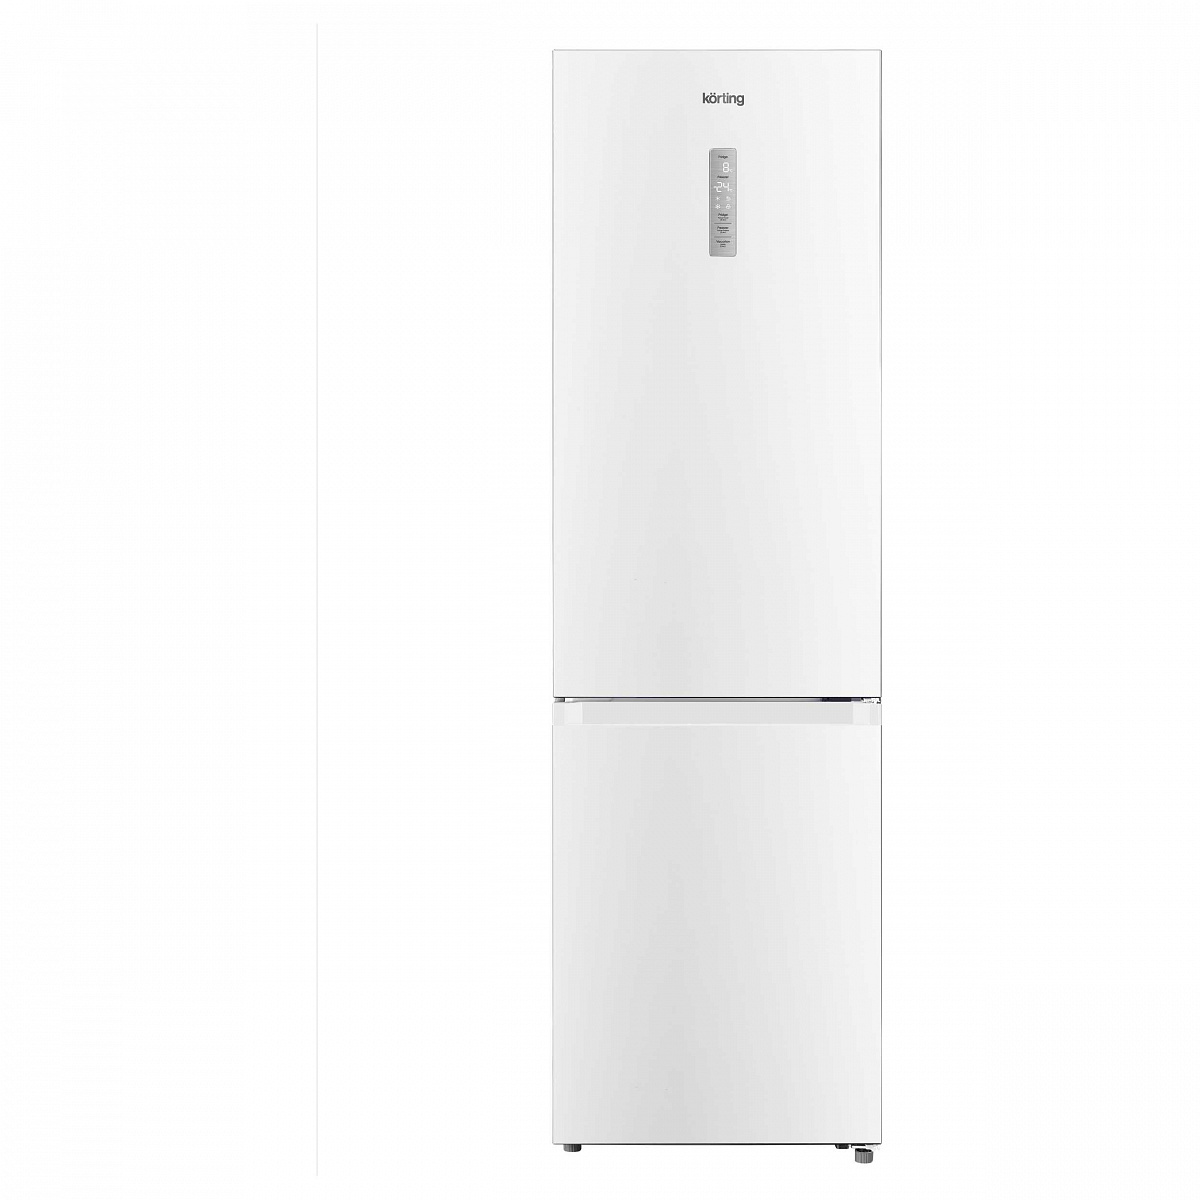 Холодильник KNFC 62029 W